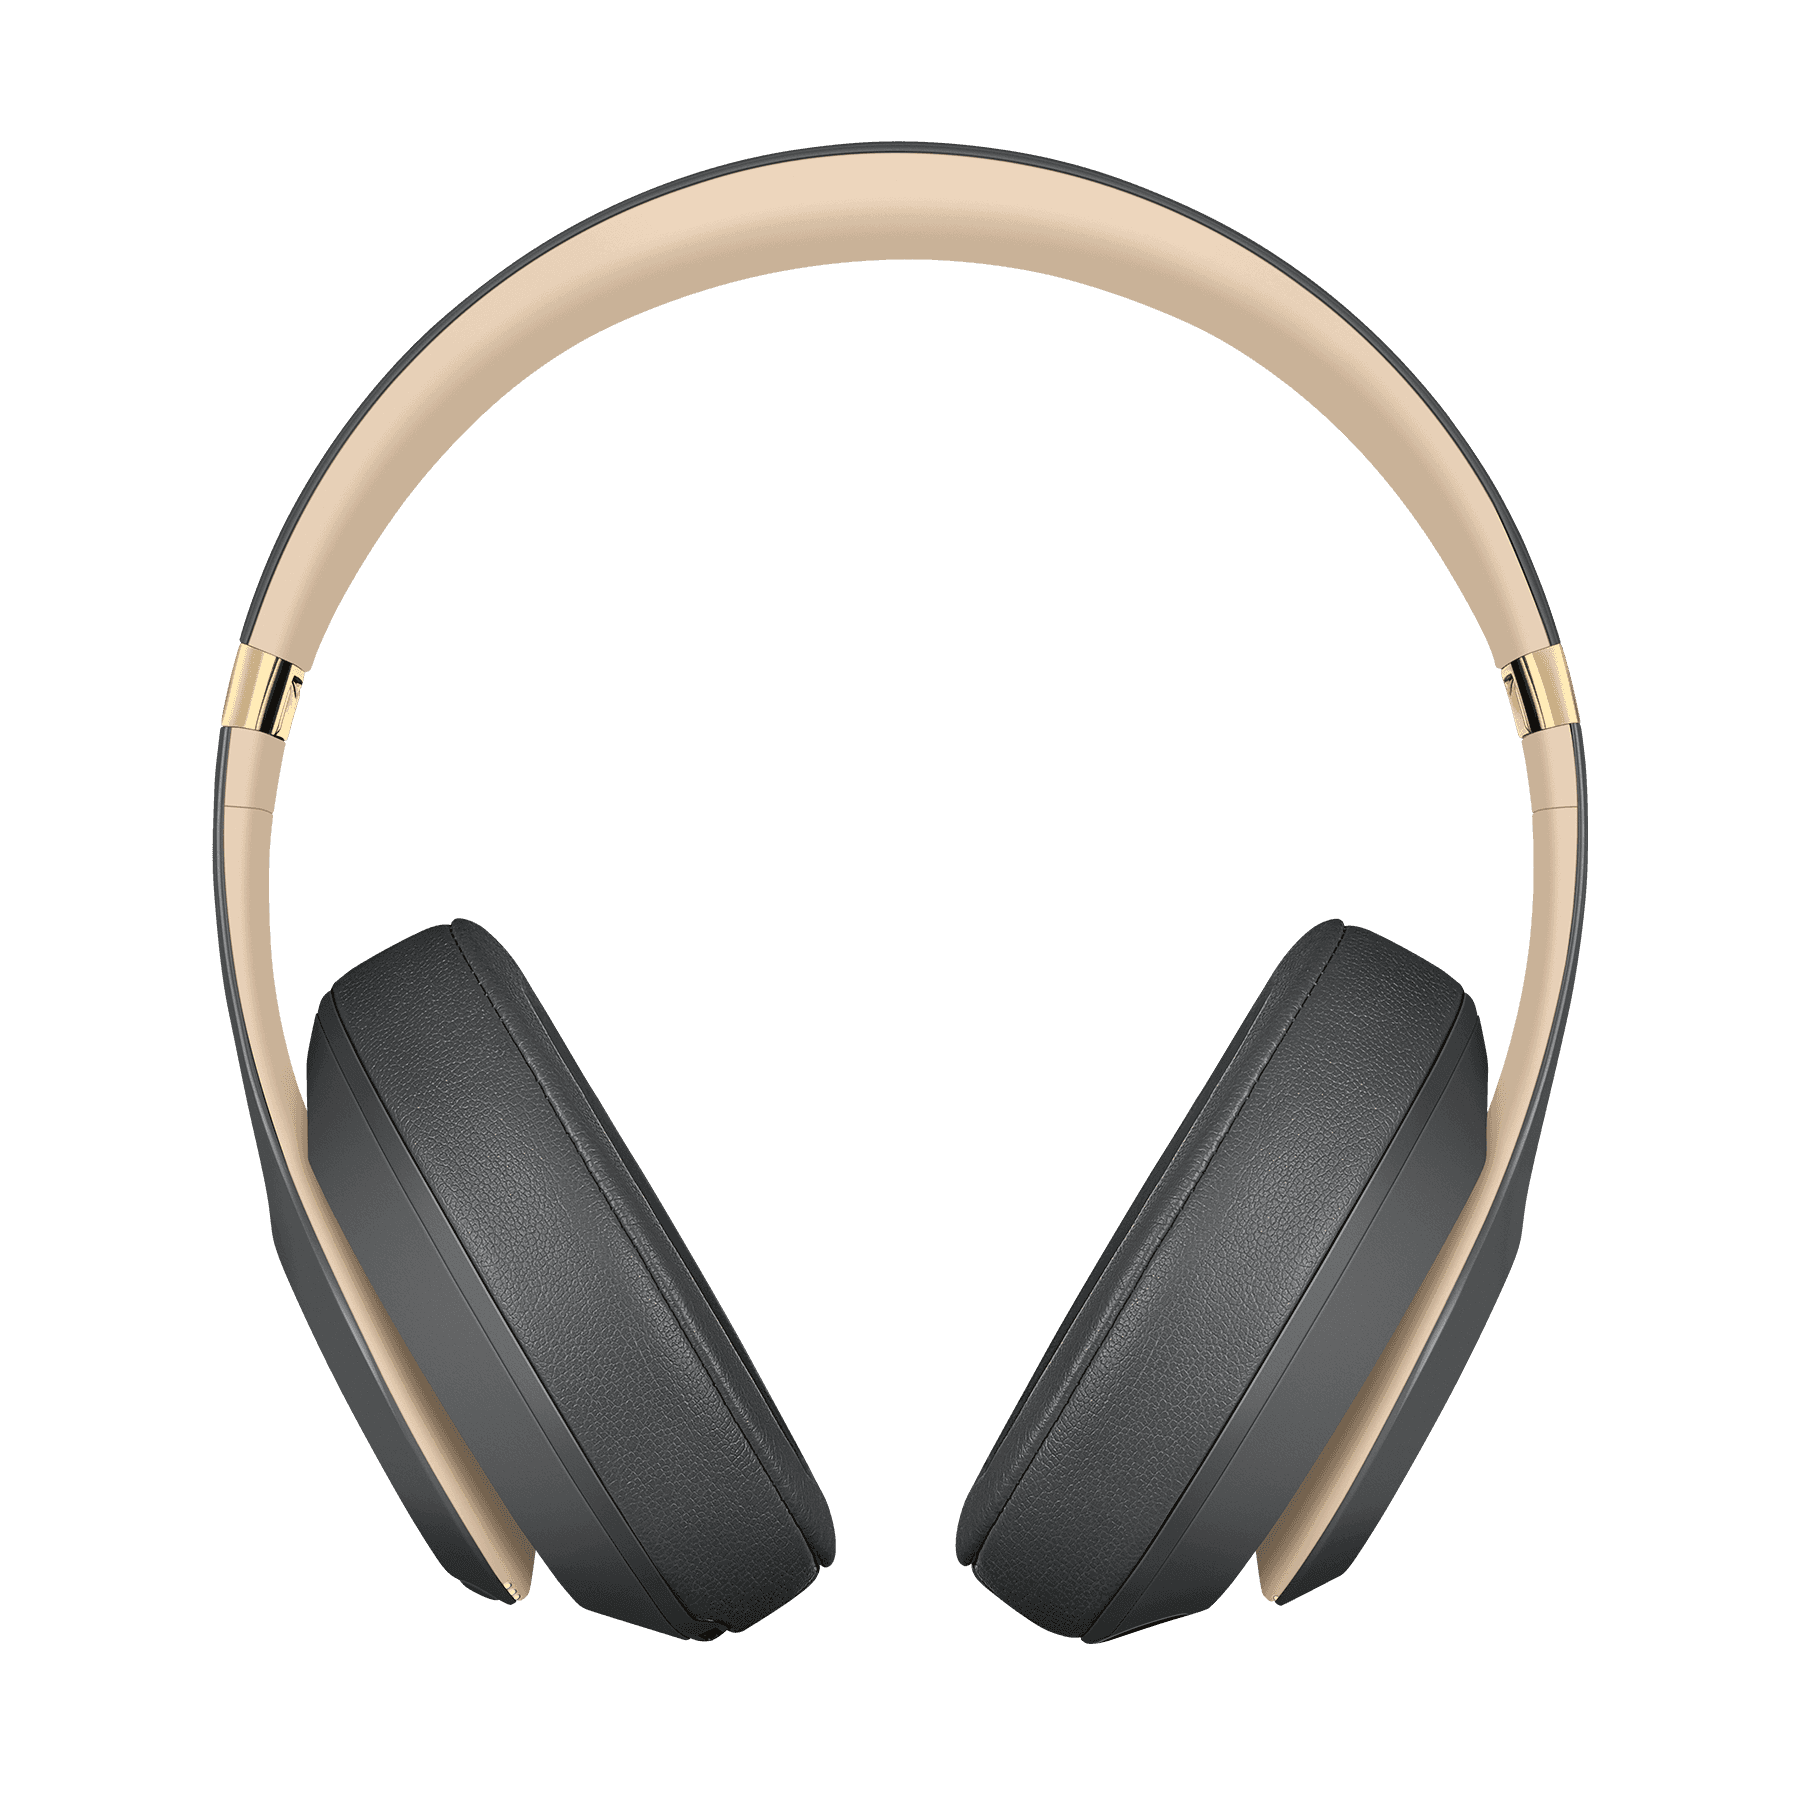 Beats Studio 3 Wireless - Over‑Ear Headphones Matte Black Price in Pakistan